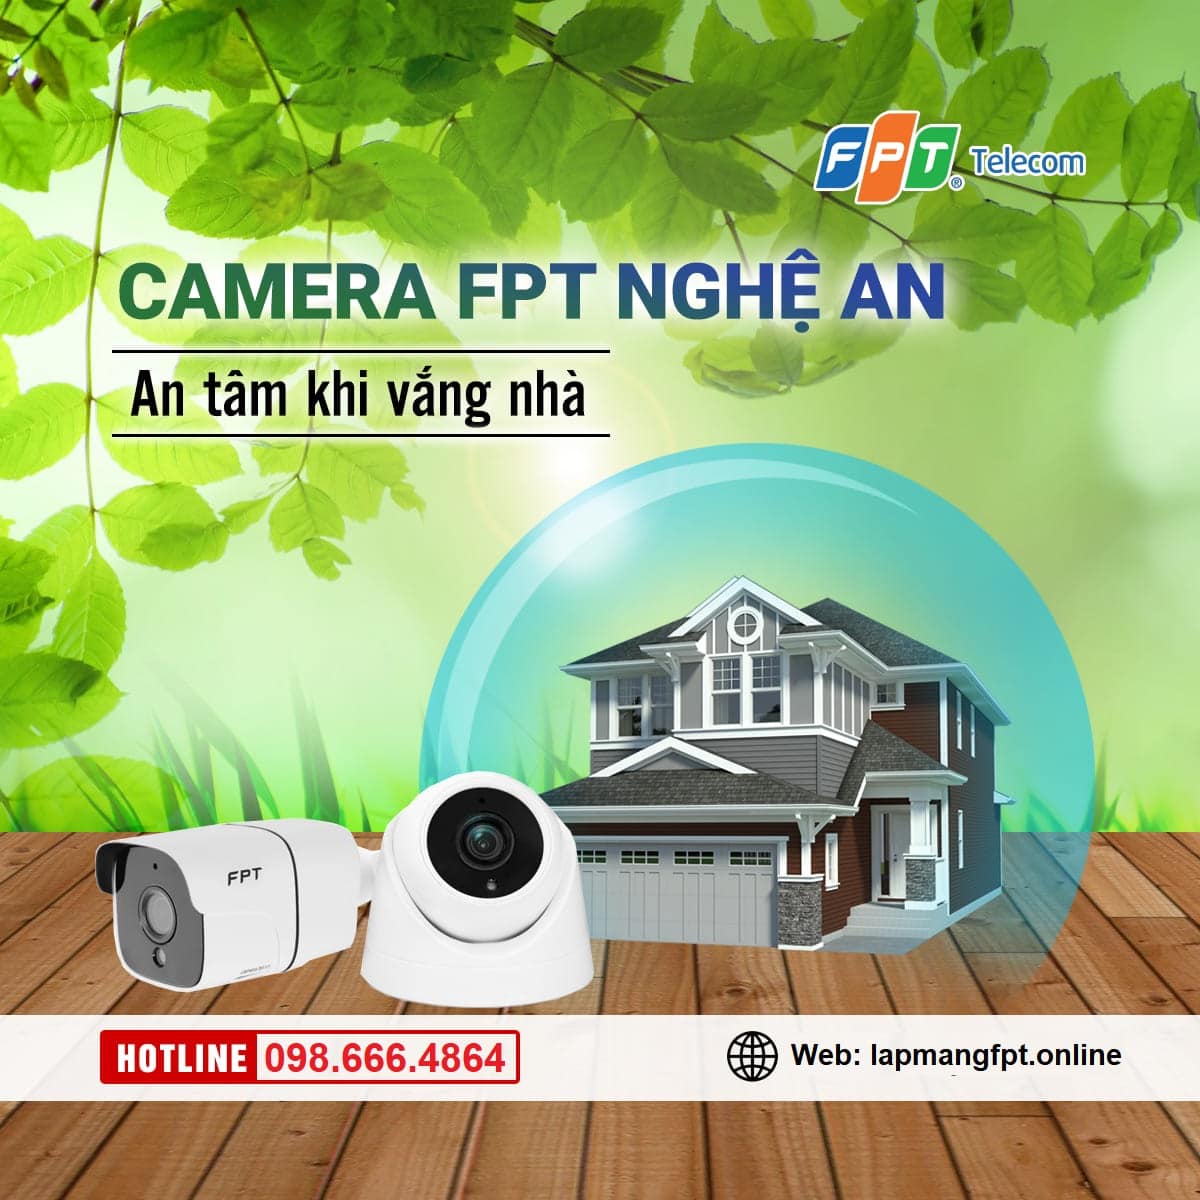 Lắp đặt camera FPT tại Nghệ An 